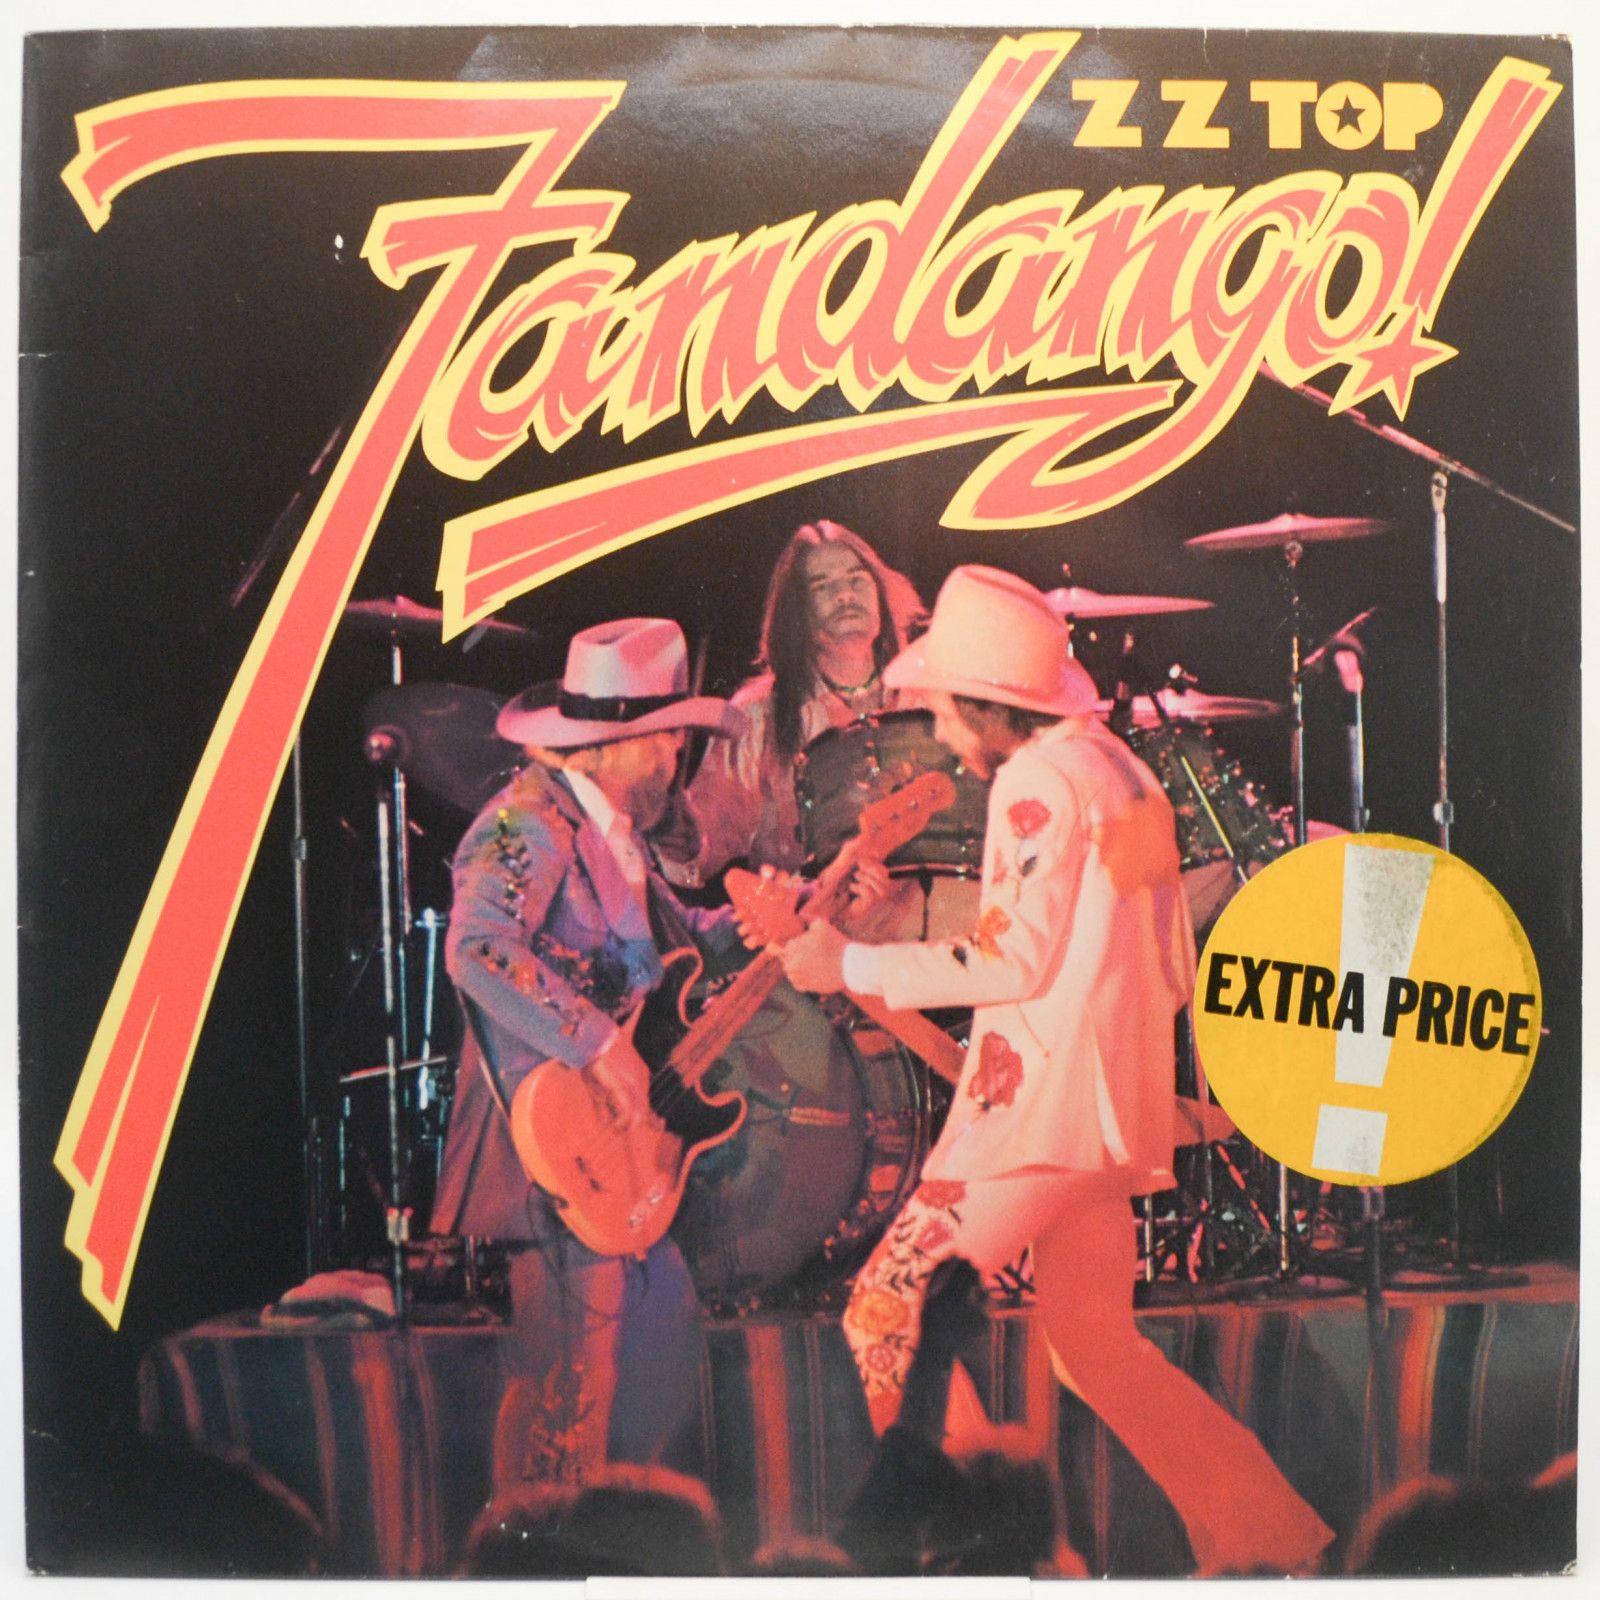 ZZ Top — Fandango!, 1975